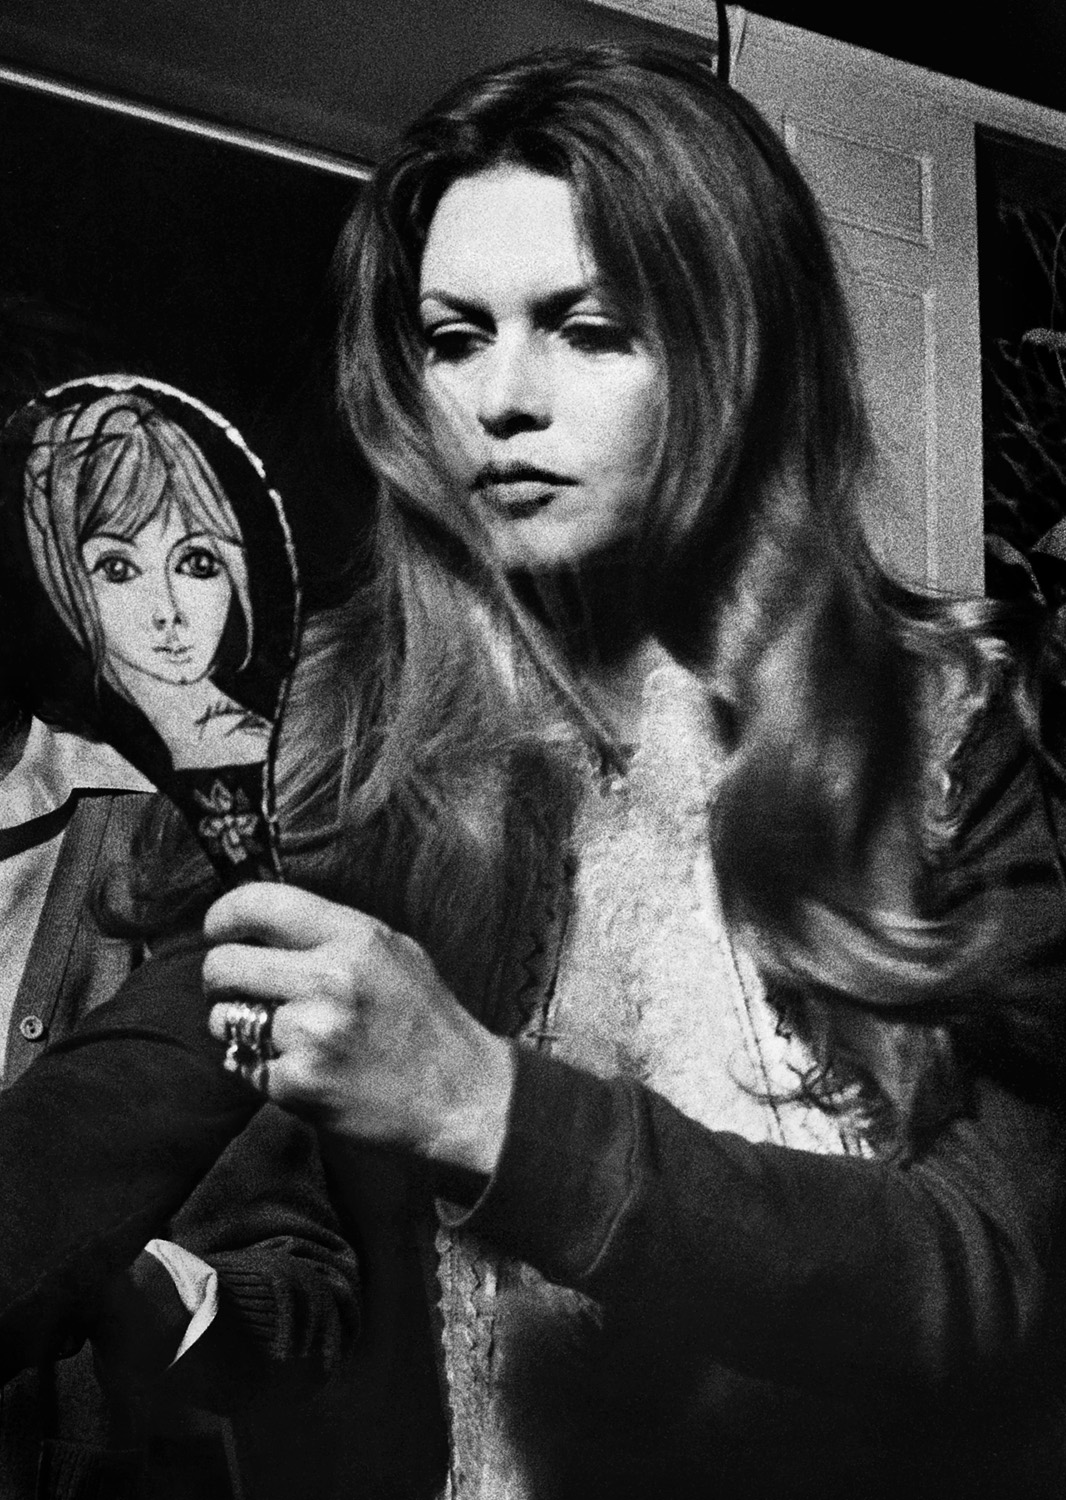 © Joakim Strömholm
Titel: Brigitte Bardot
Plats/Datum: Uppsala 1972
Bildmått: 30x40 cm  
Teknik: Digital c-print
Montering: Träram 40x50 cm
Upplaga: 20  Signerad: Ja   Pris: SEK 5.000